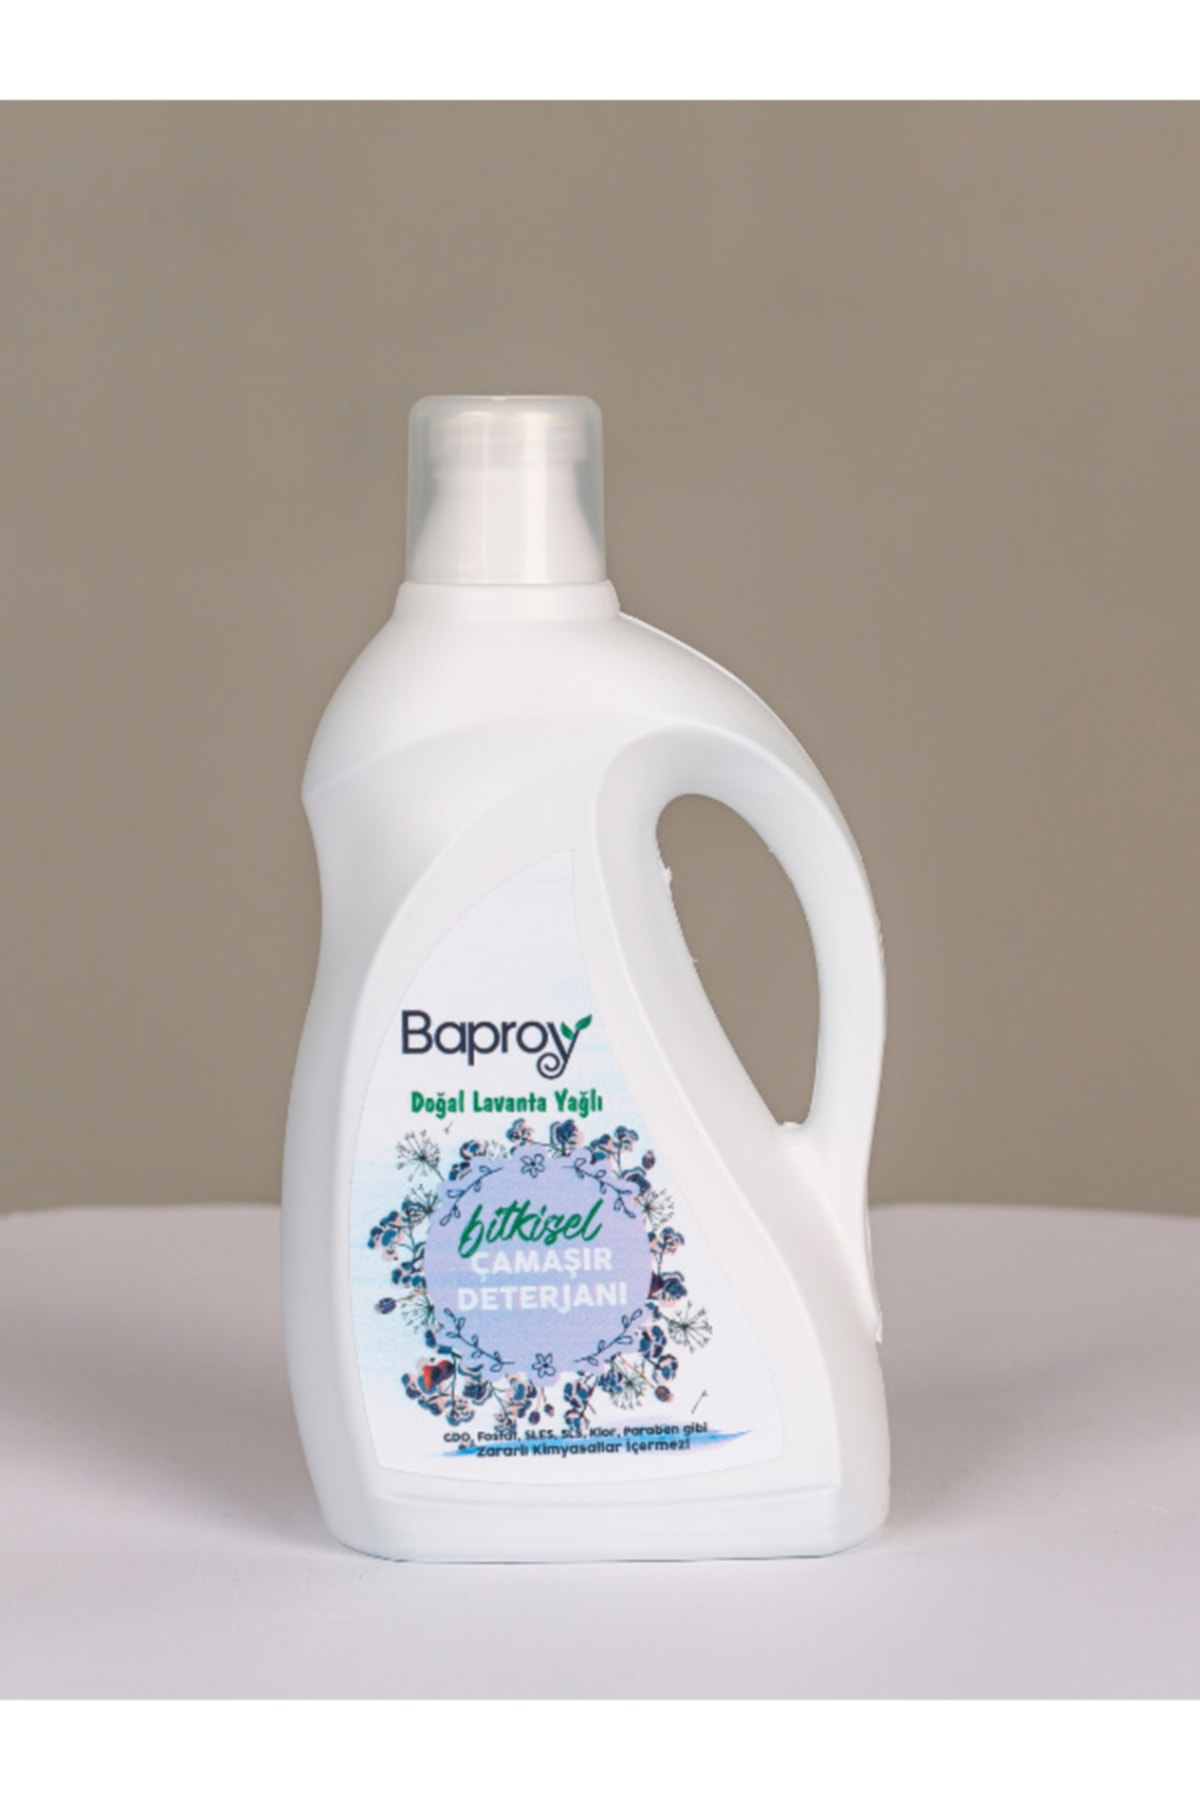 Baproy Bitkisel Çamaşır Deterjanı 1 lt Doğal Lavanta Yağlı 25 Yıkama Sensitive001